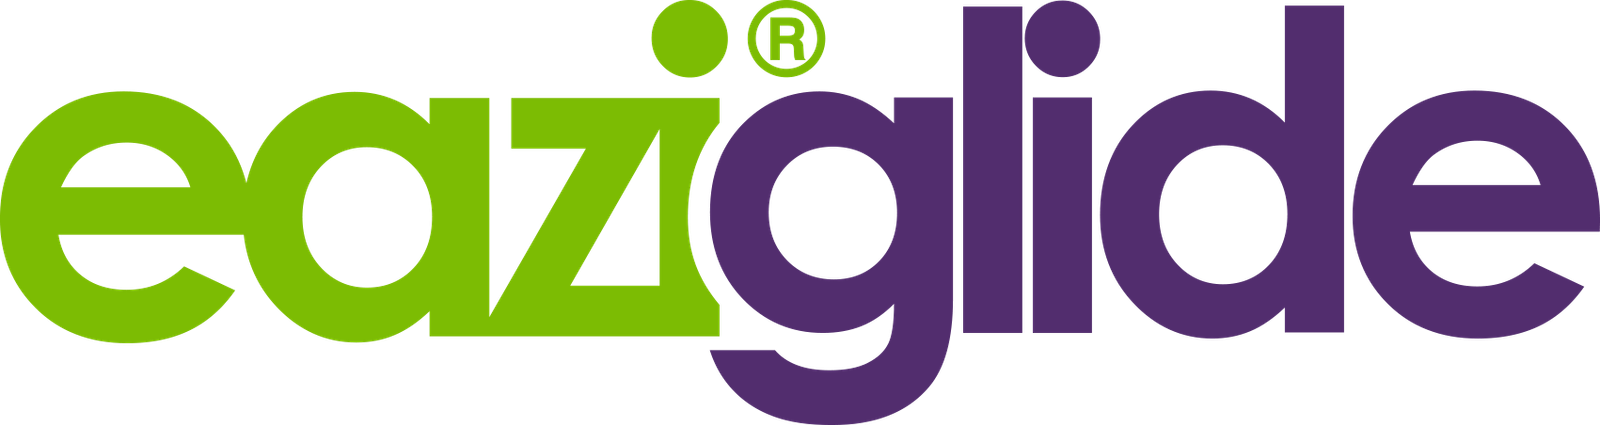 Eaziglide Logo 